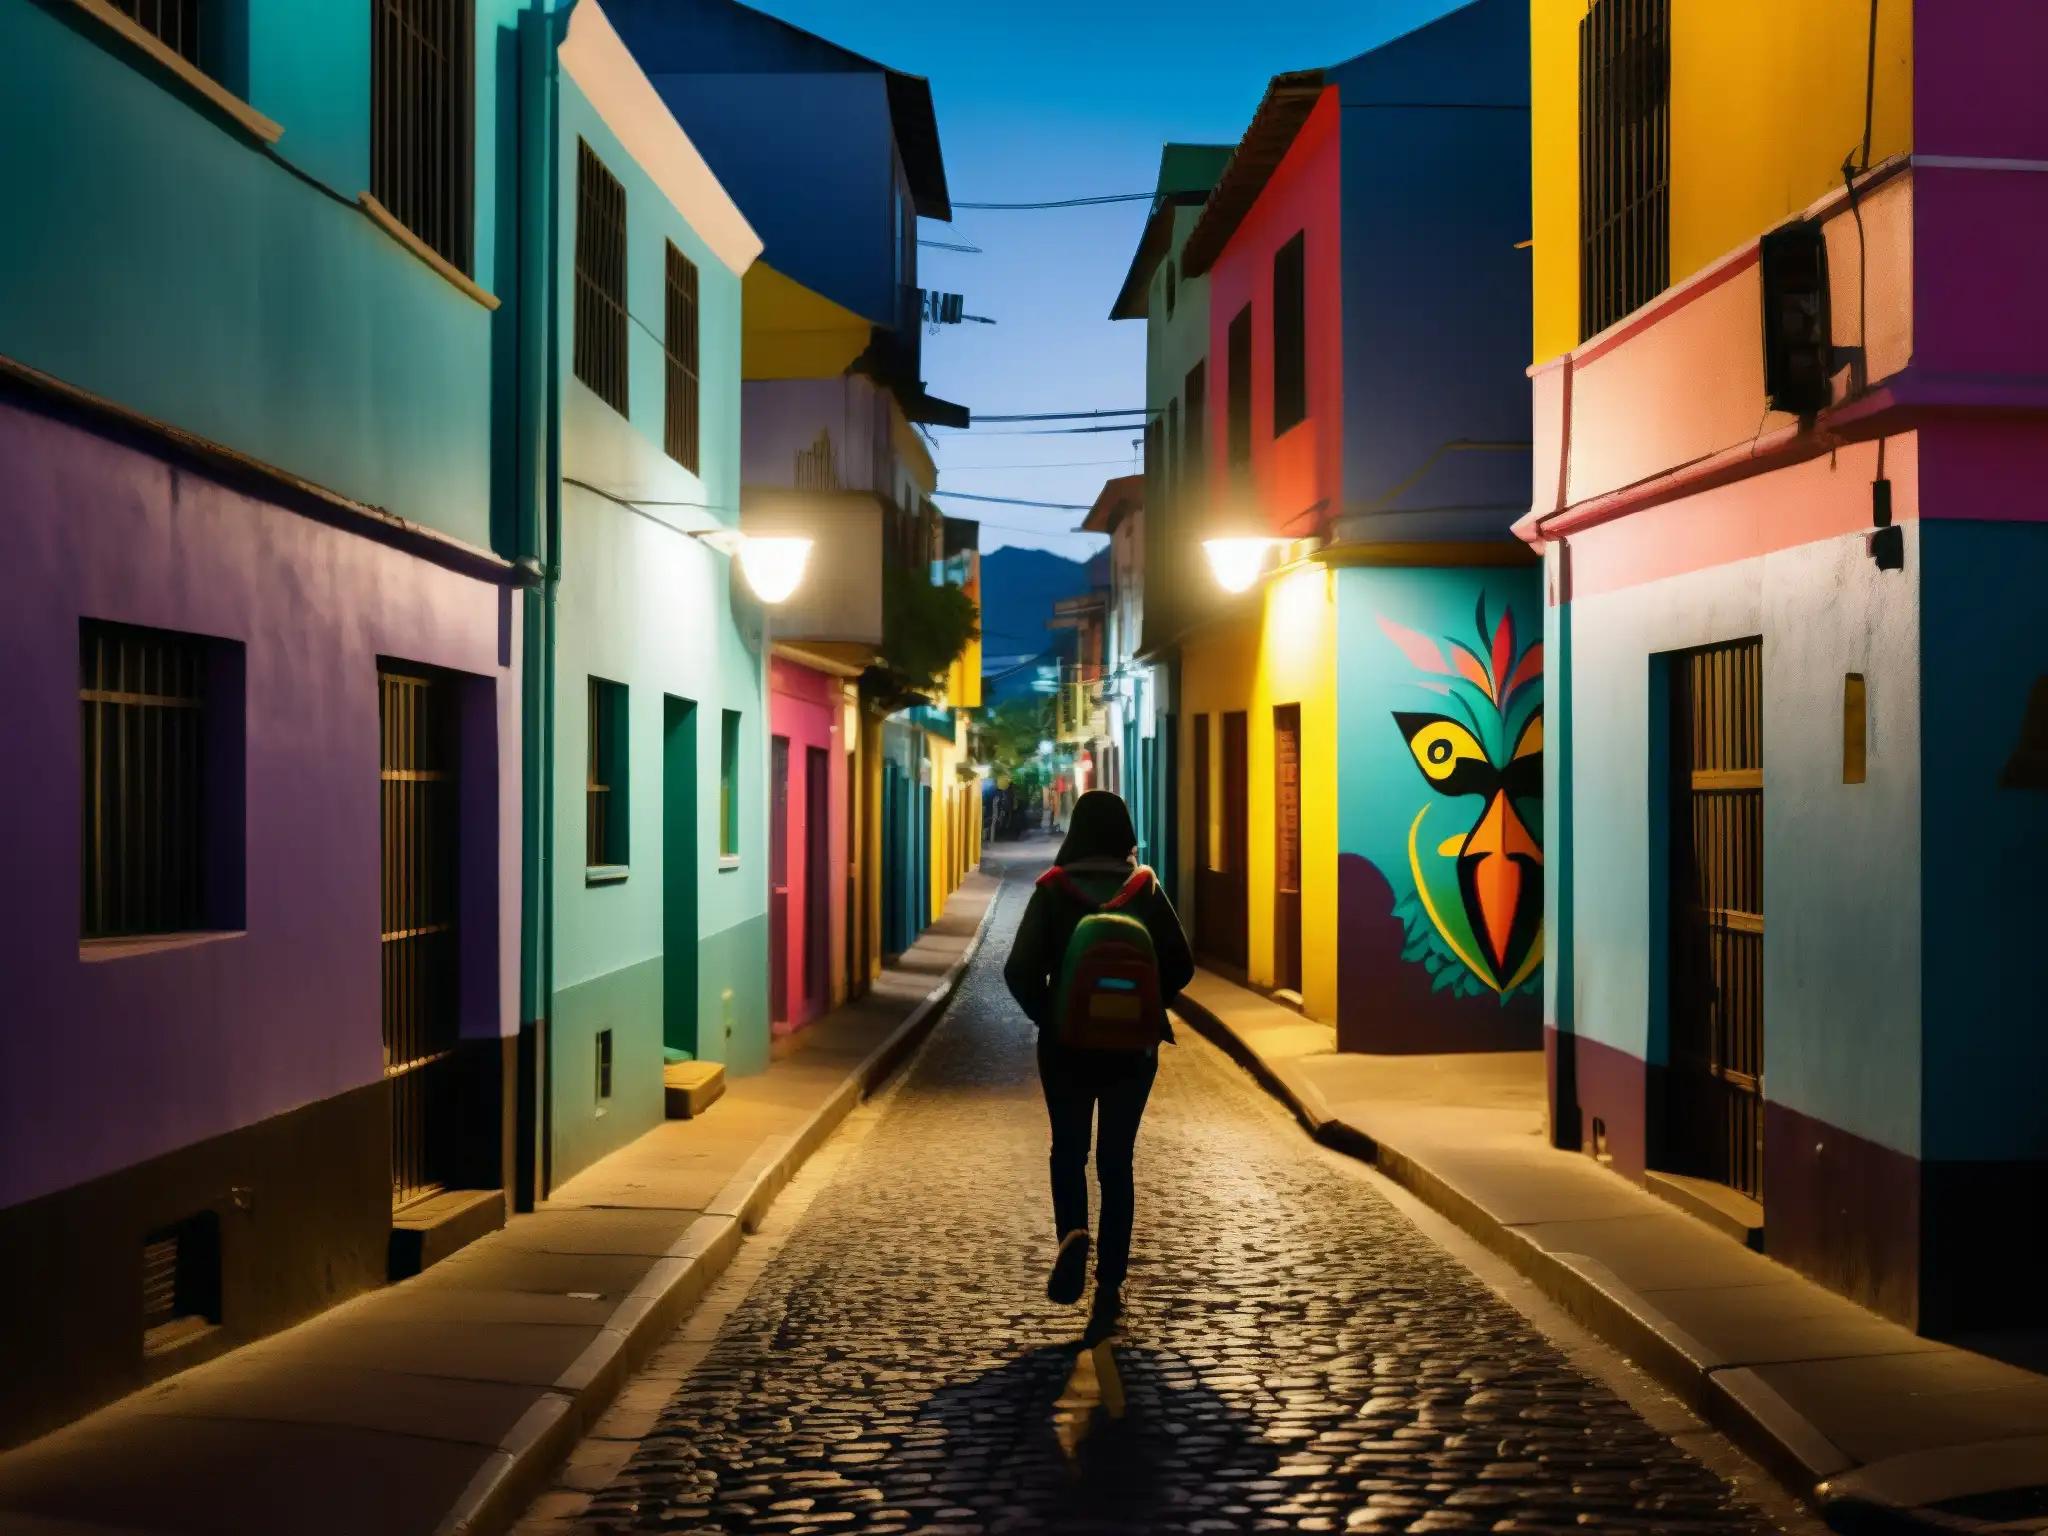 Mitos y leyendas urbanas América del Sur: Noche misteriosa en la ciudad, con callejones iluminados, murales coloridos y siluetas enigmáticas